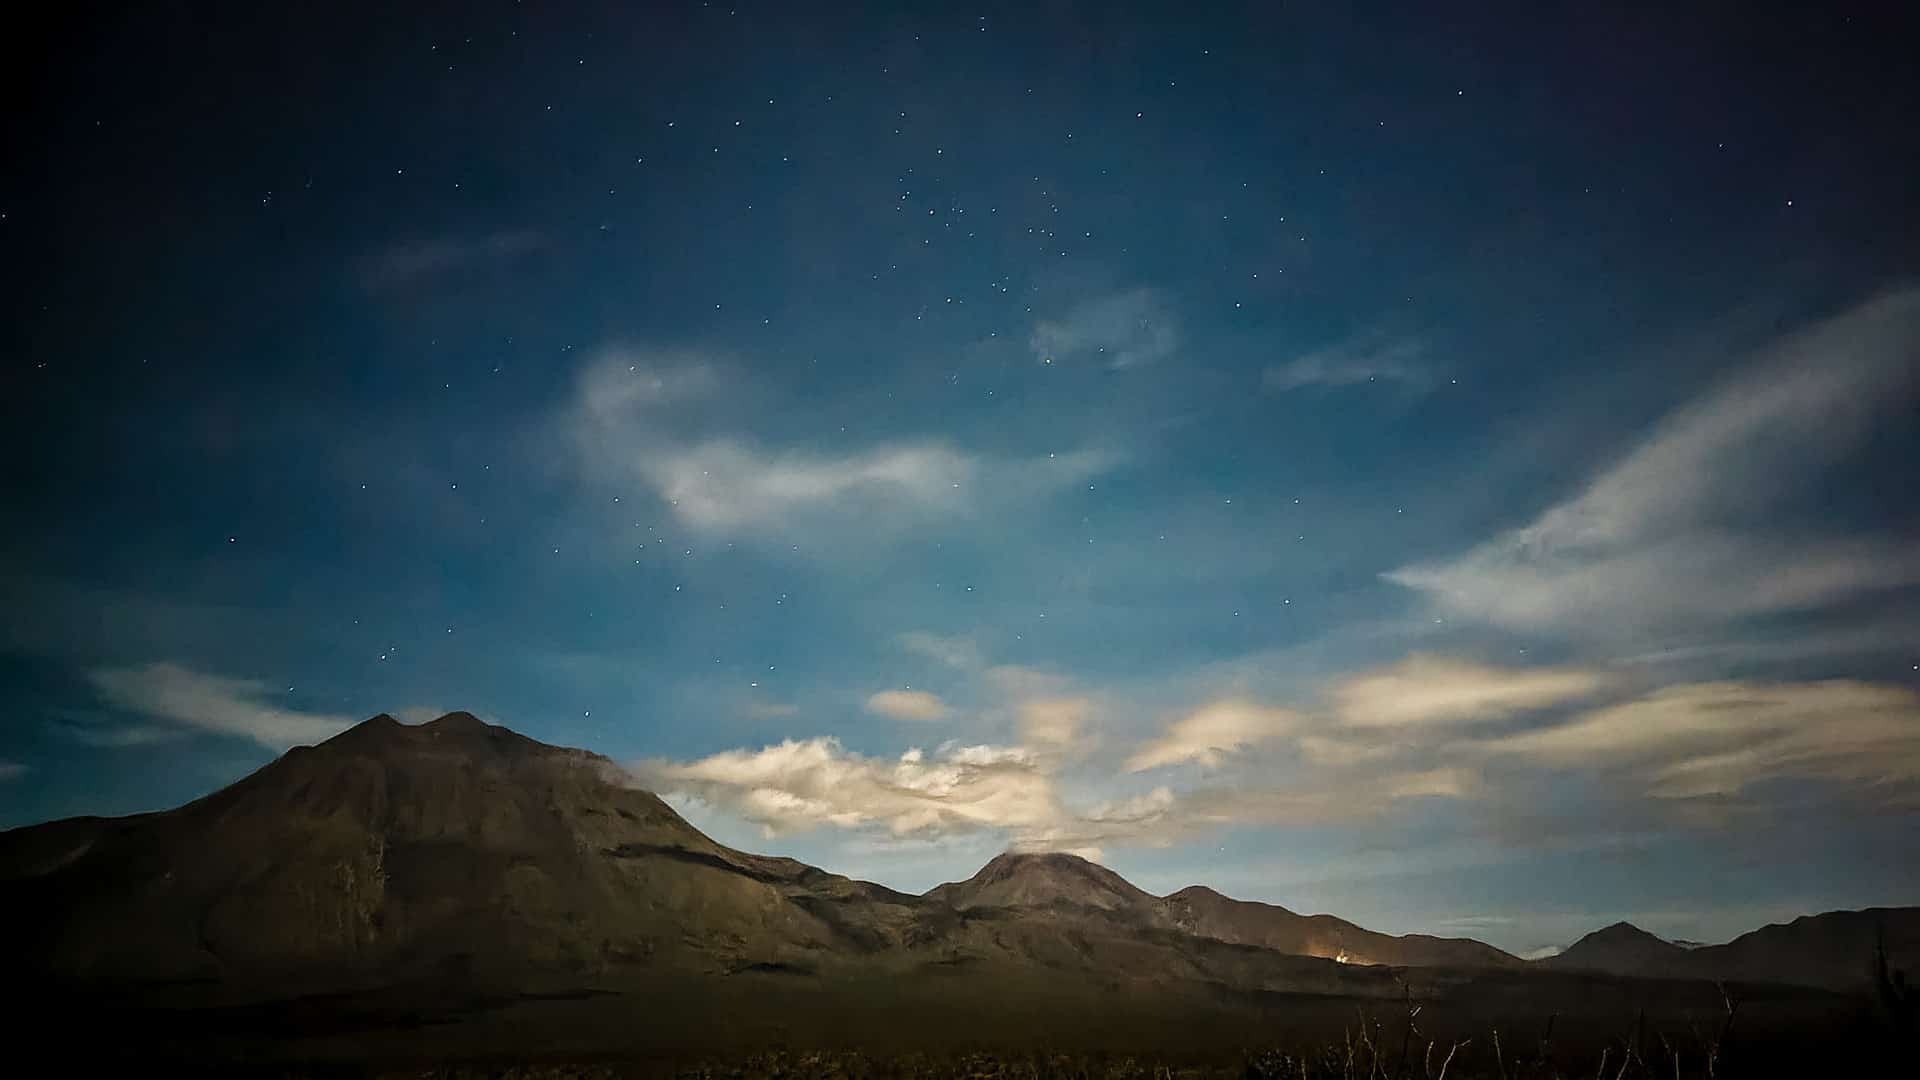 Stargazing at Las Tres Vírgenes in Baja California Sur, Mexico.